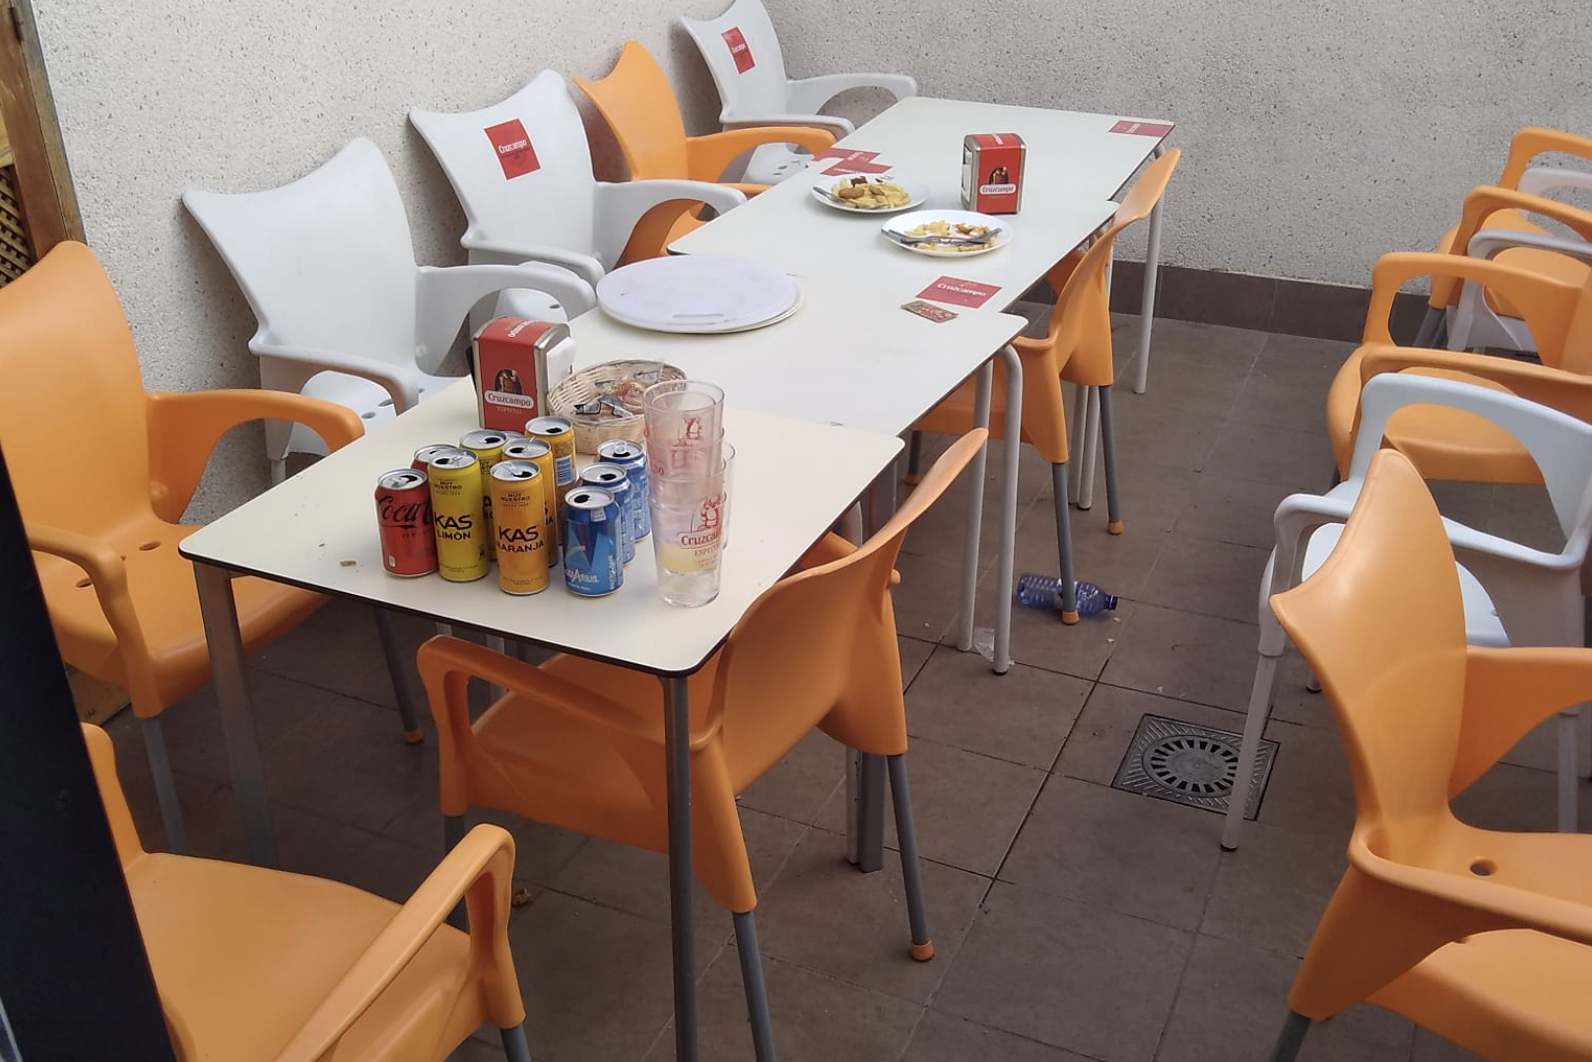 Así dejaron la mesa un grupo de adolescentes en un bar de Sevilla.